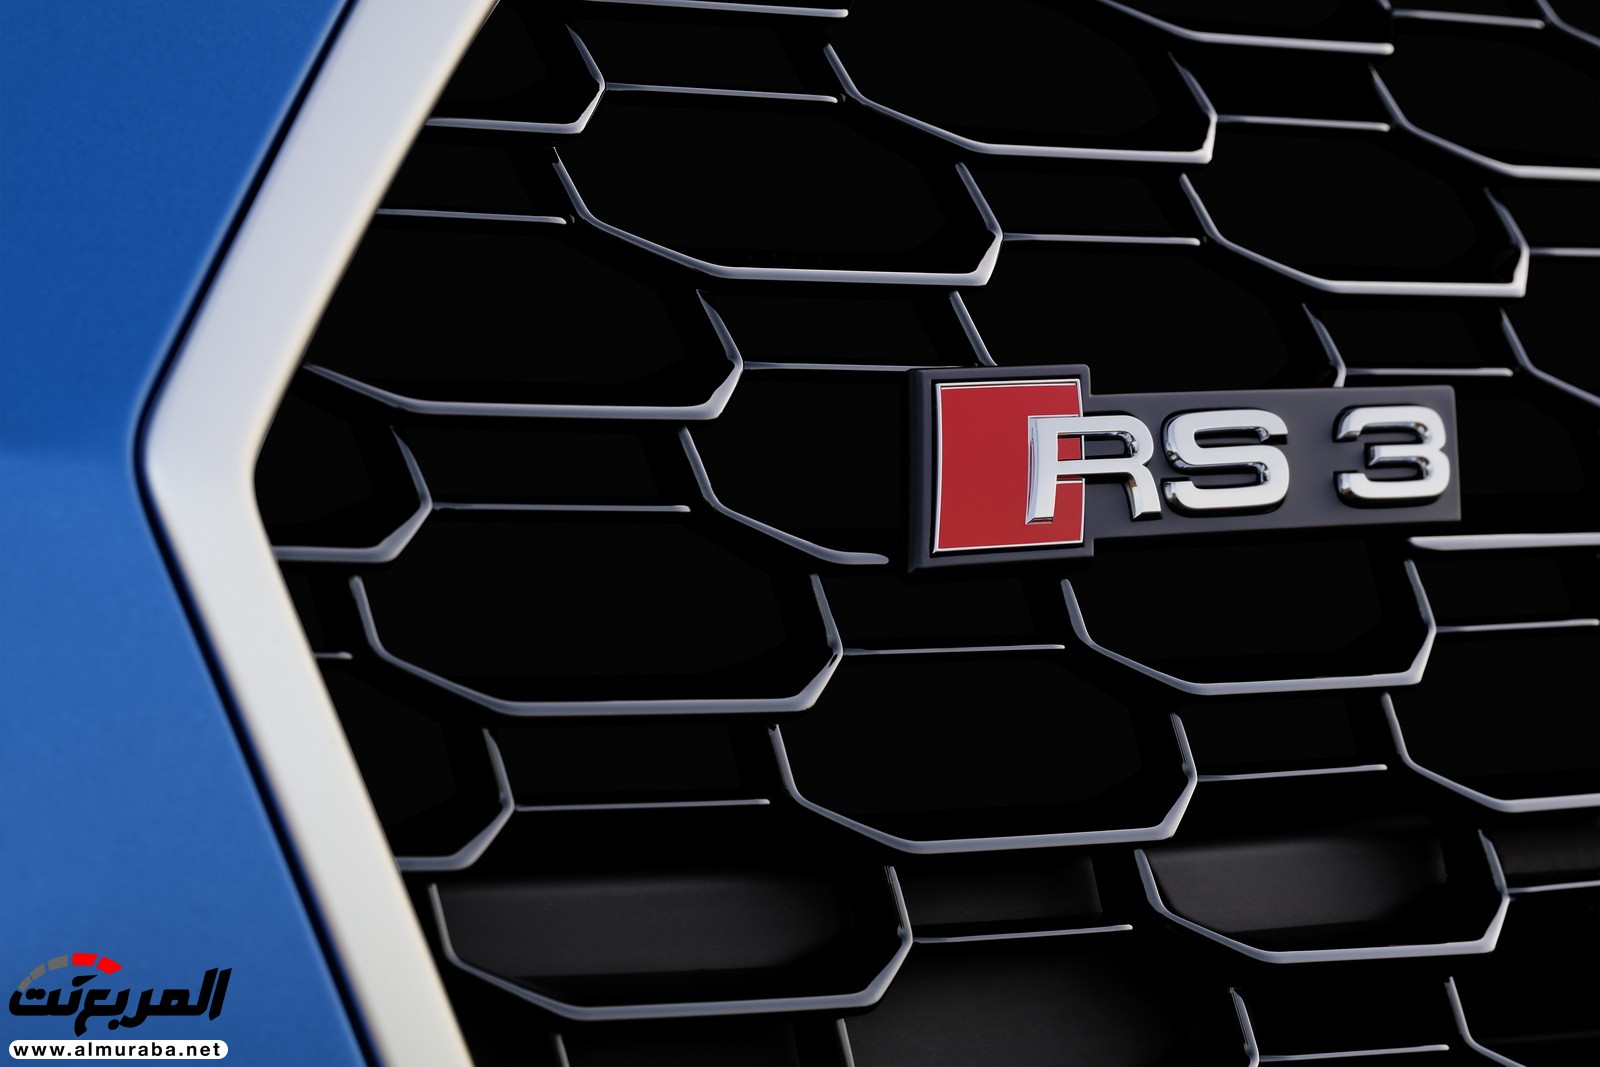 "أودي" تكشف عن RS3 الجديدة كليا 2018 بقوة 395 حصان Audi 17